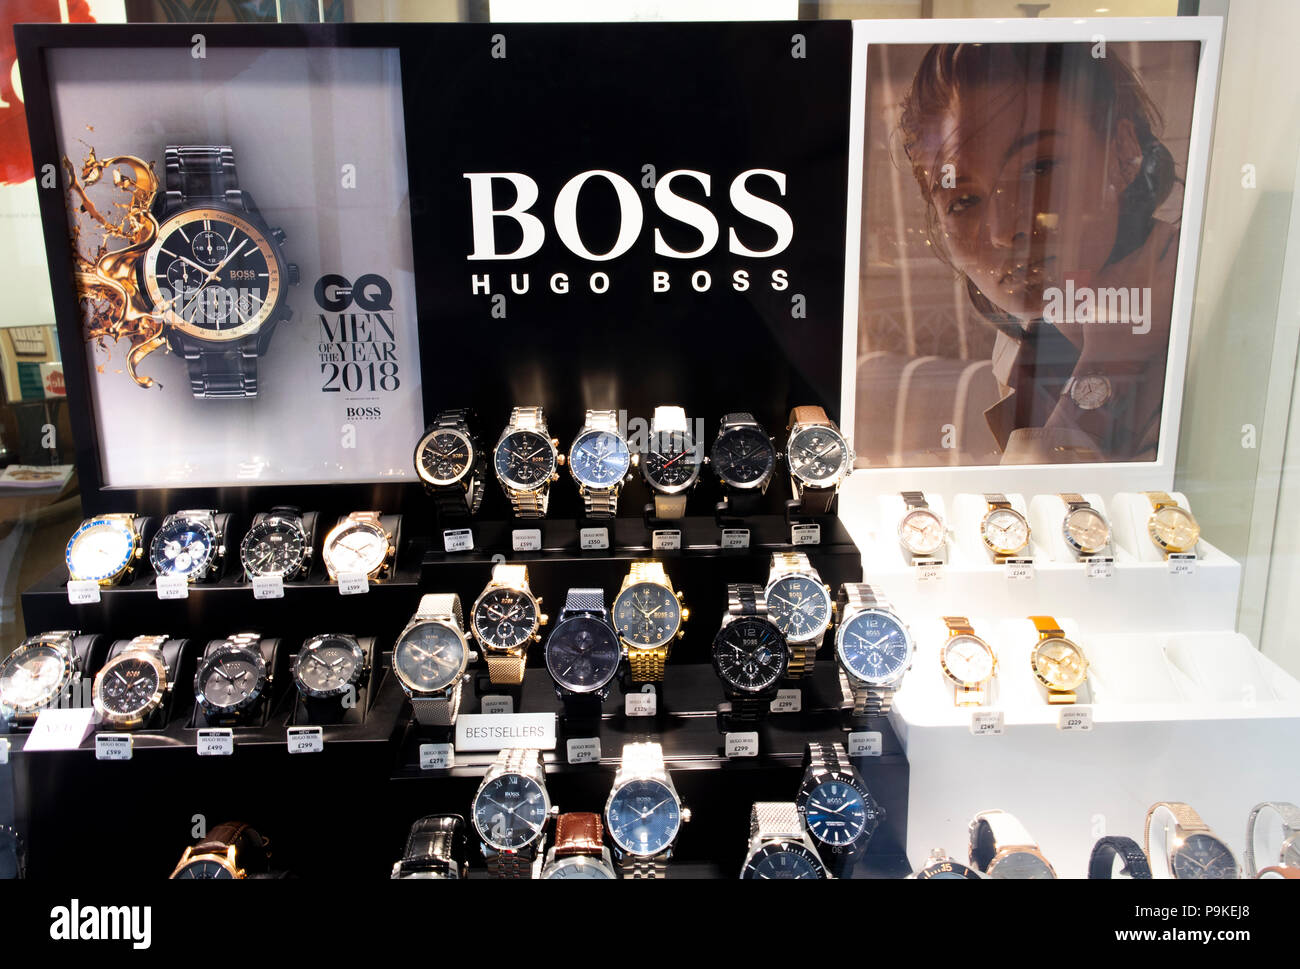 Hugo Boss watch Anzeige in juweliere Schaufenster, gegründet im Jahre 1924  durch Hugo Boss und ist mit Hauptsitz in Metzingen, Deutschland  Stockfotografie - Alamy